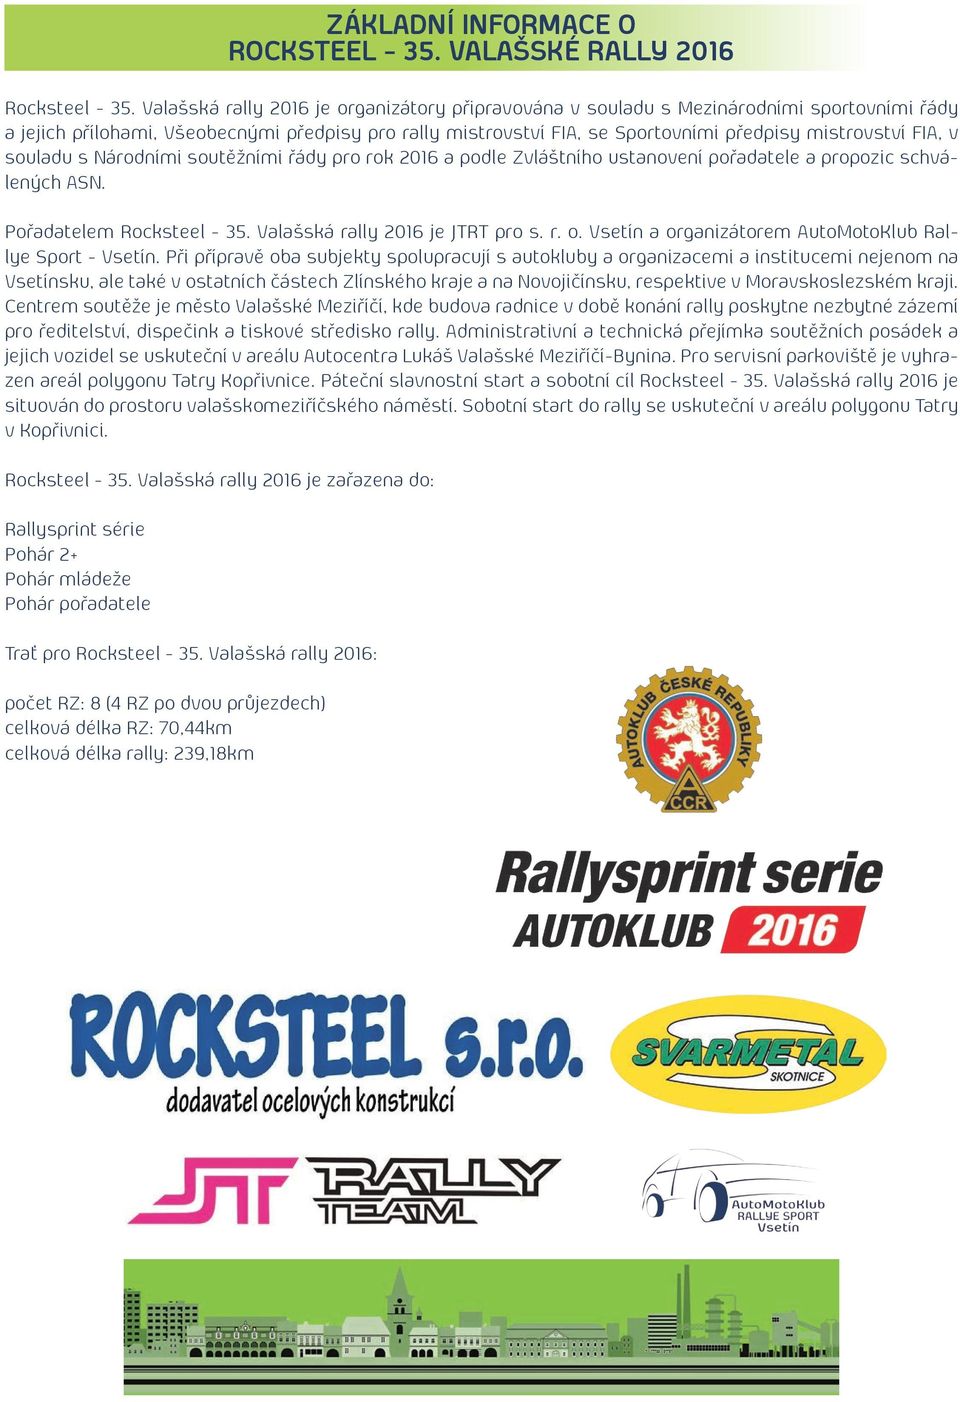 FIA, v souladu s Národními soutěžními řády pro rok 2016 a podle Zvláštního ustanovení pořadatele a propozic schválených ASN. Pořadatelem Rocksteel - 35. Valašská rally 2016 je JTRT pro s. r. o.